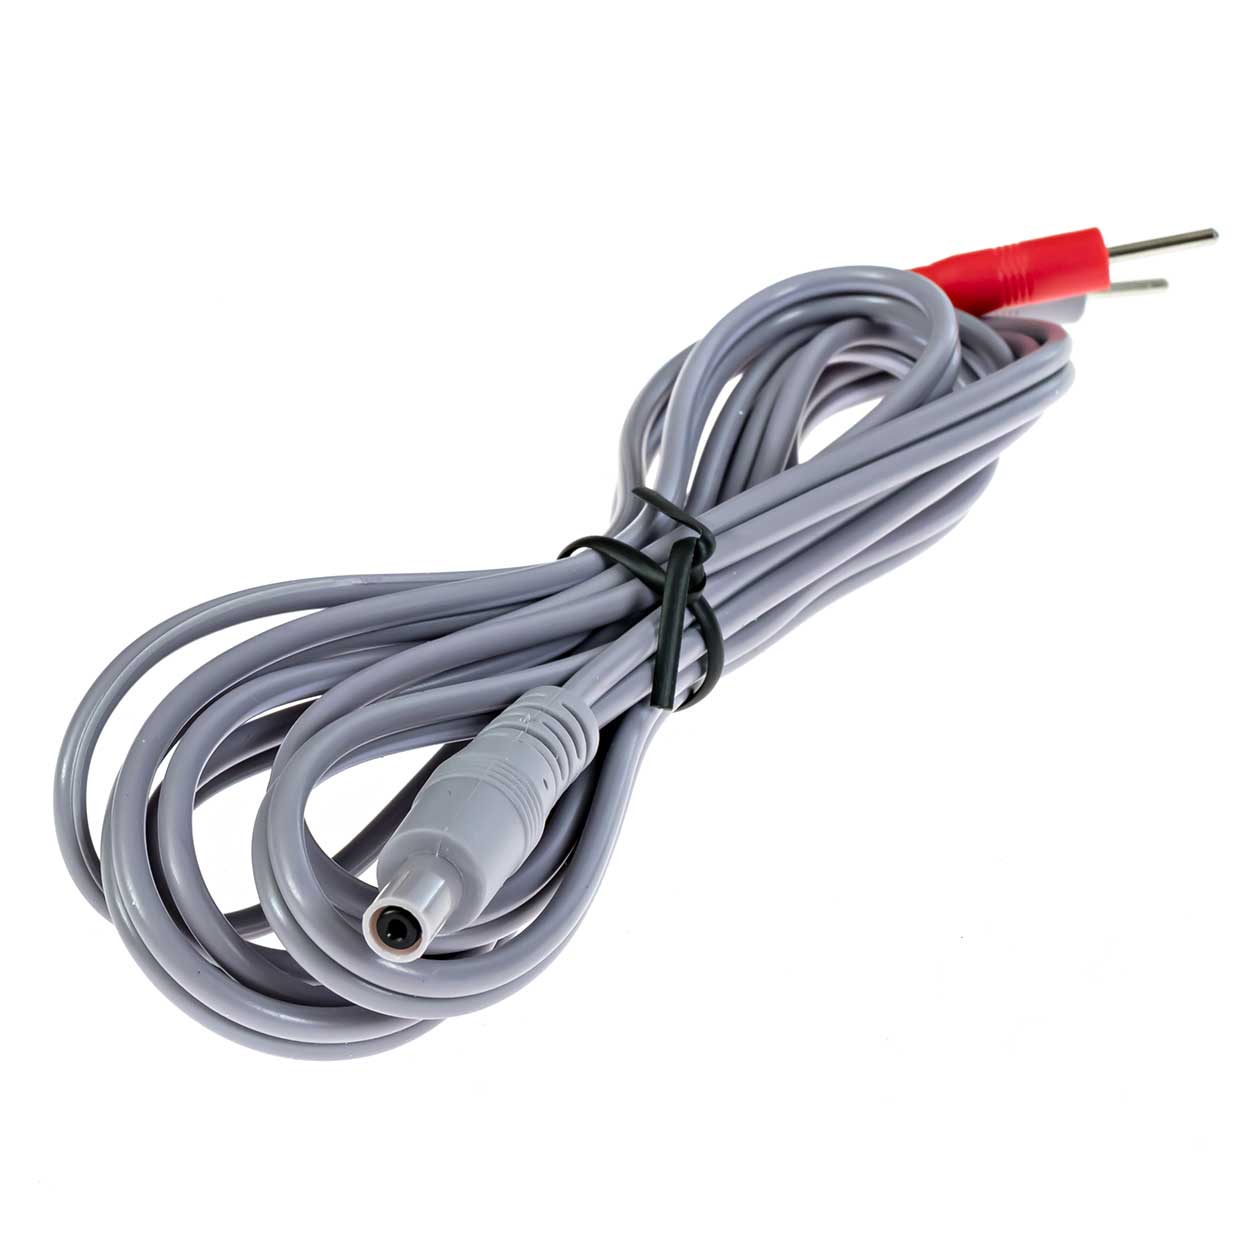 Brain Premier Electrode Lead Cable